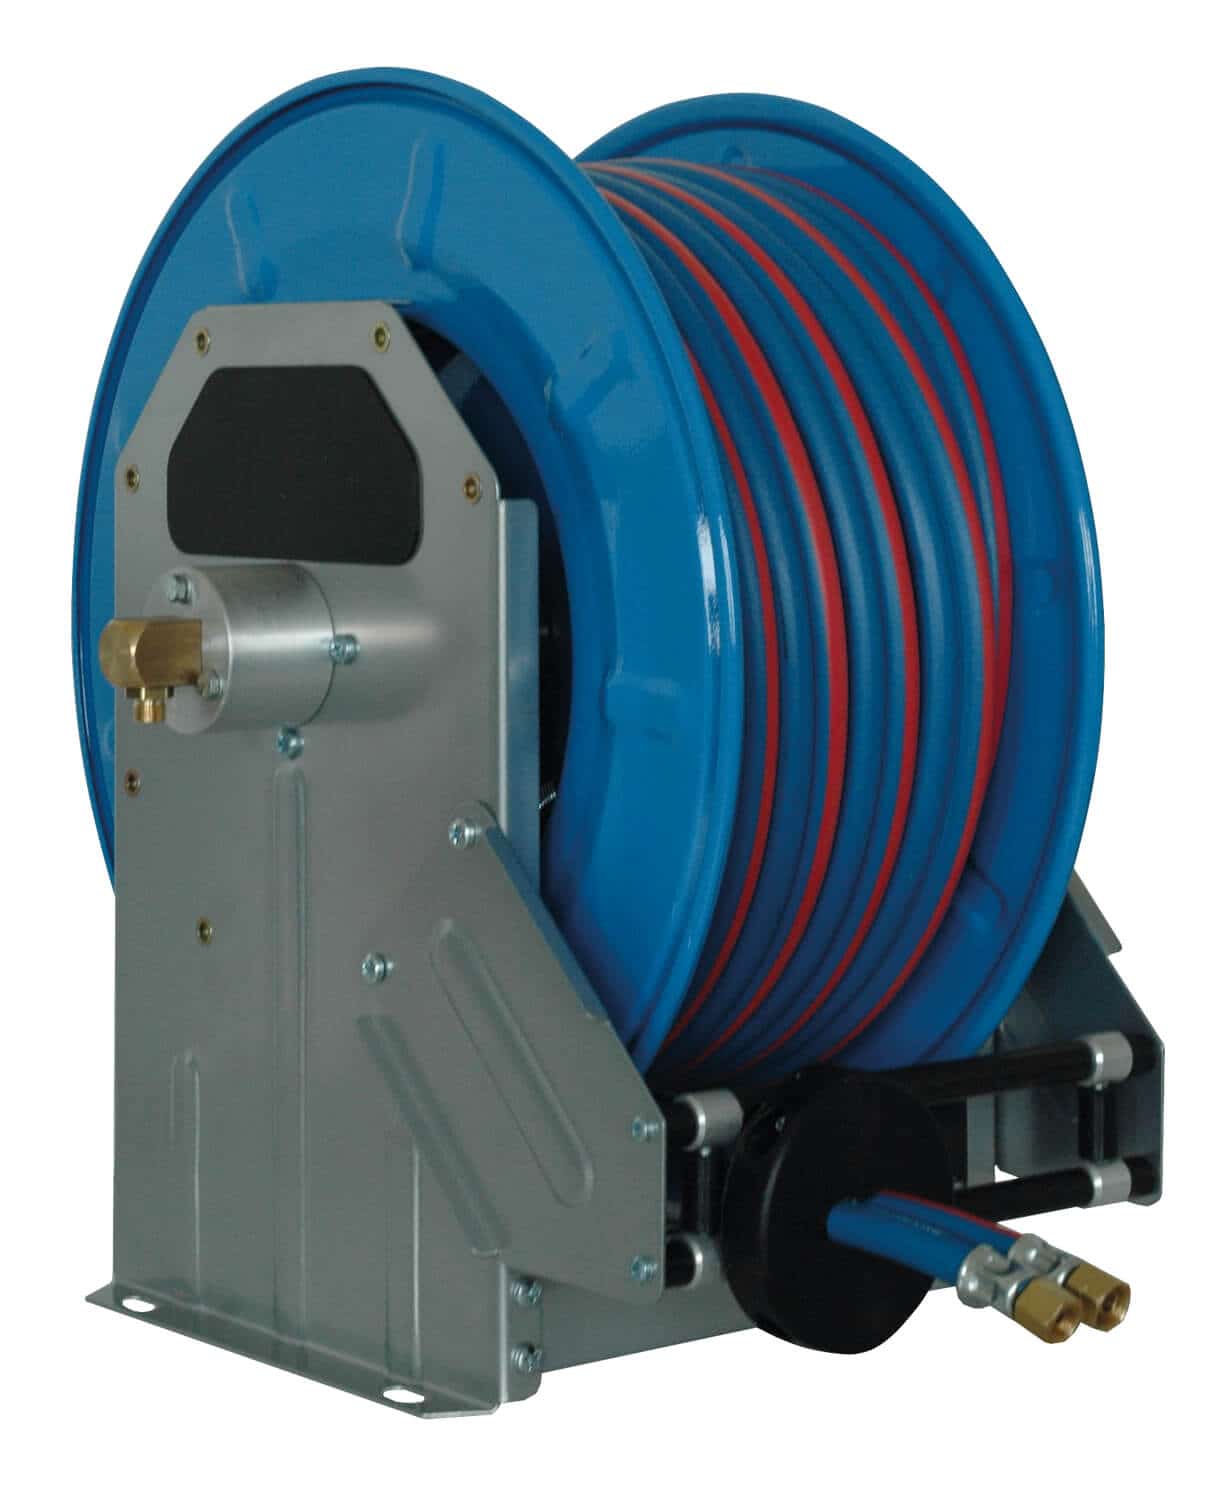 Automatischer Schlauchaufroller für technische Gase mit 20 m Spezial-Doppelschlauch DN 06/09, zur Wand-, Boden- oder Deckenmontage.